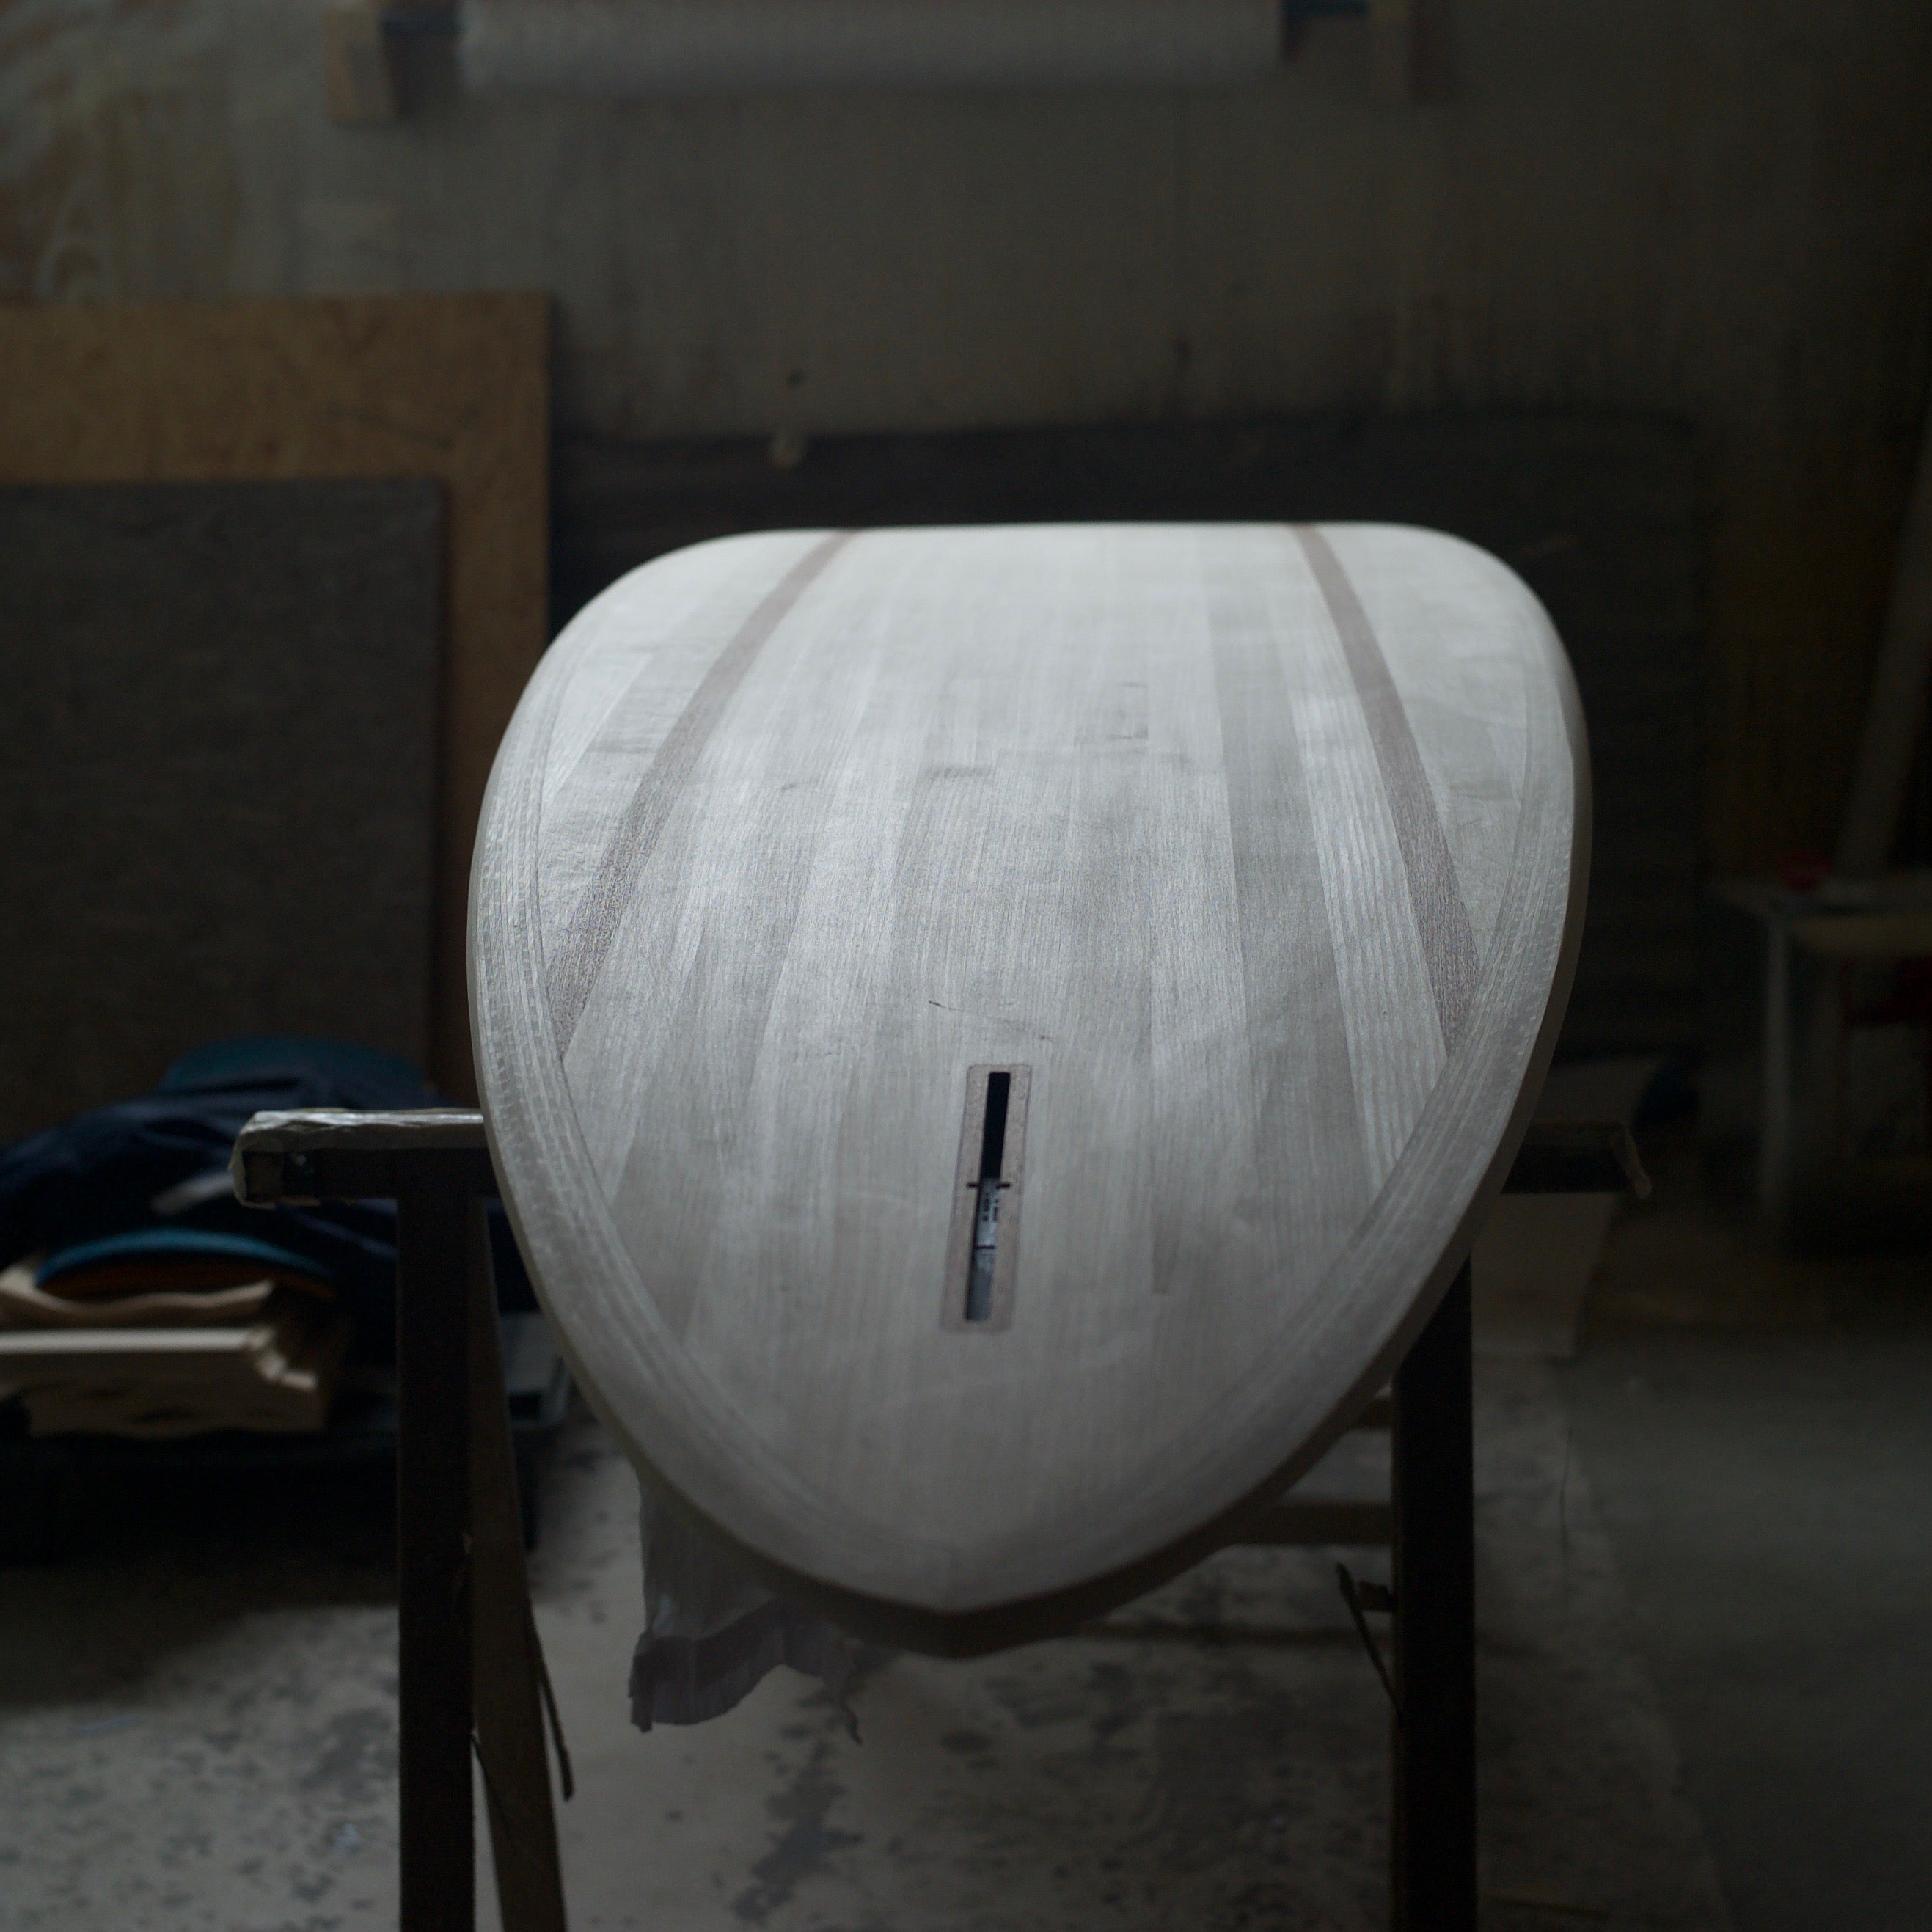 LGS spruce wood table "Board"